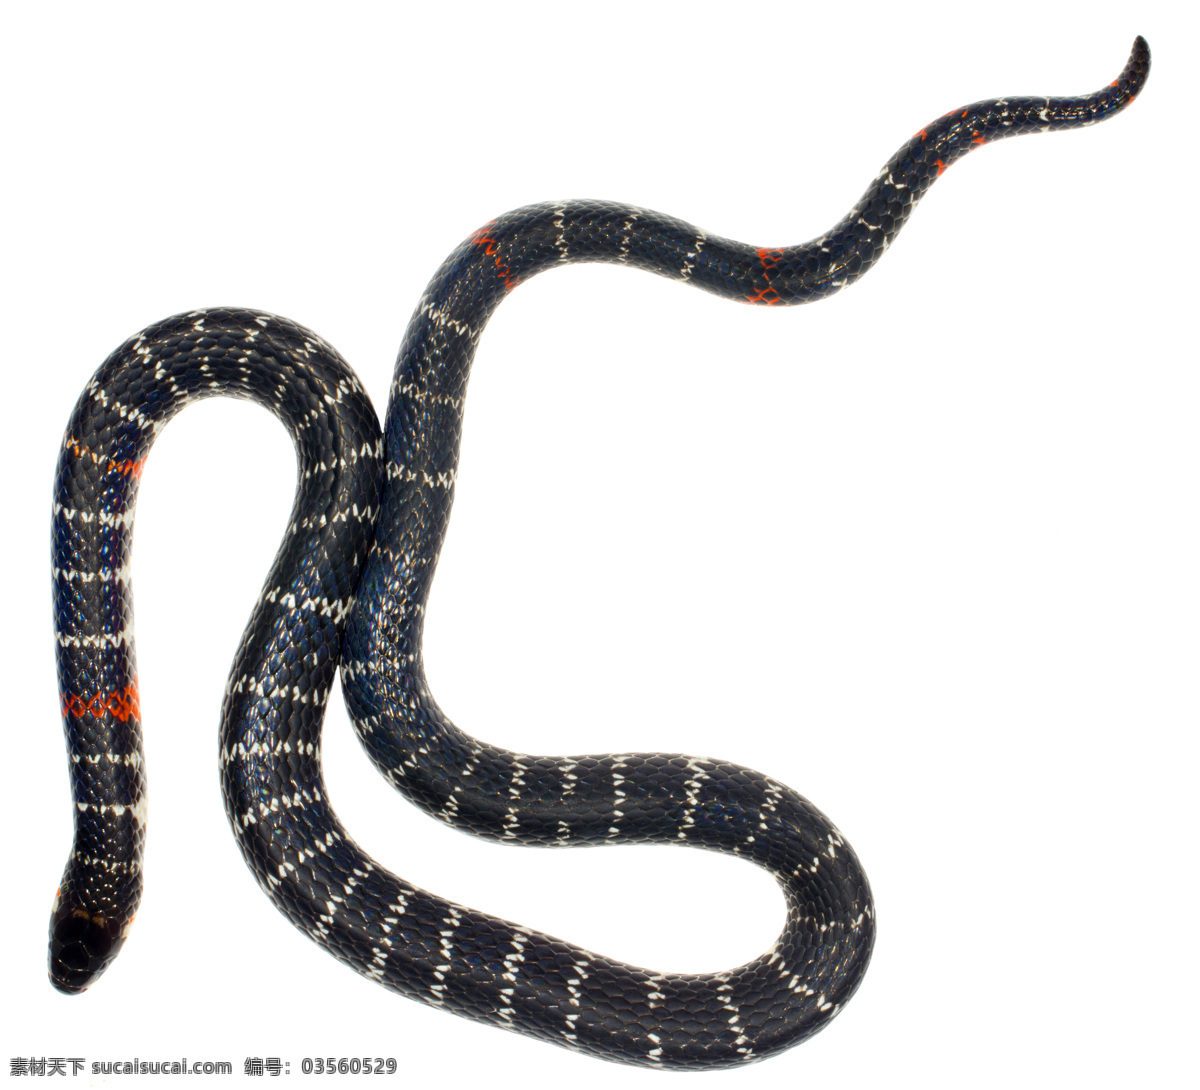 蛇 蛇类 花蛇 青蛇 爬行类 长蛇 蟒蛇 生物世界 野生动物 唯美 可爱 动物 野生 眼镜蛇